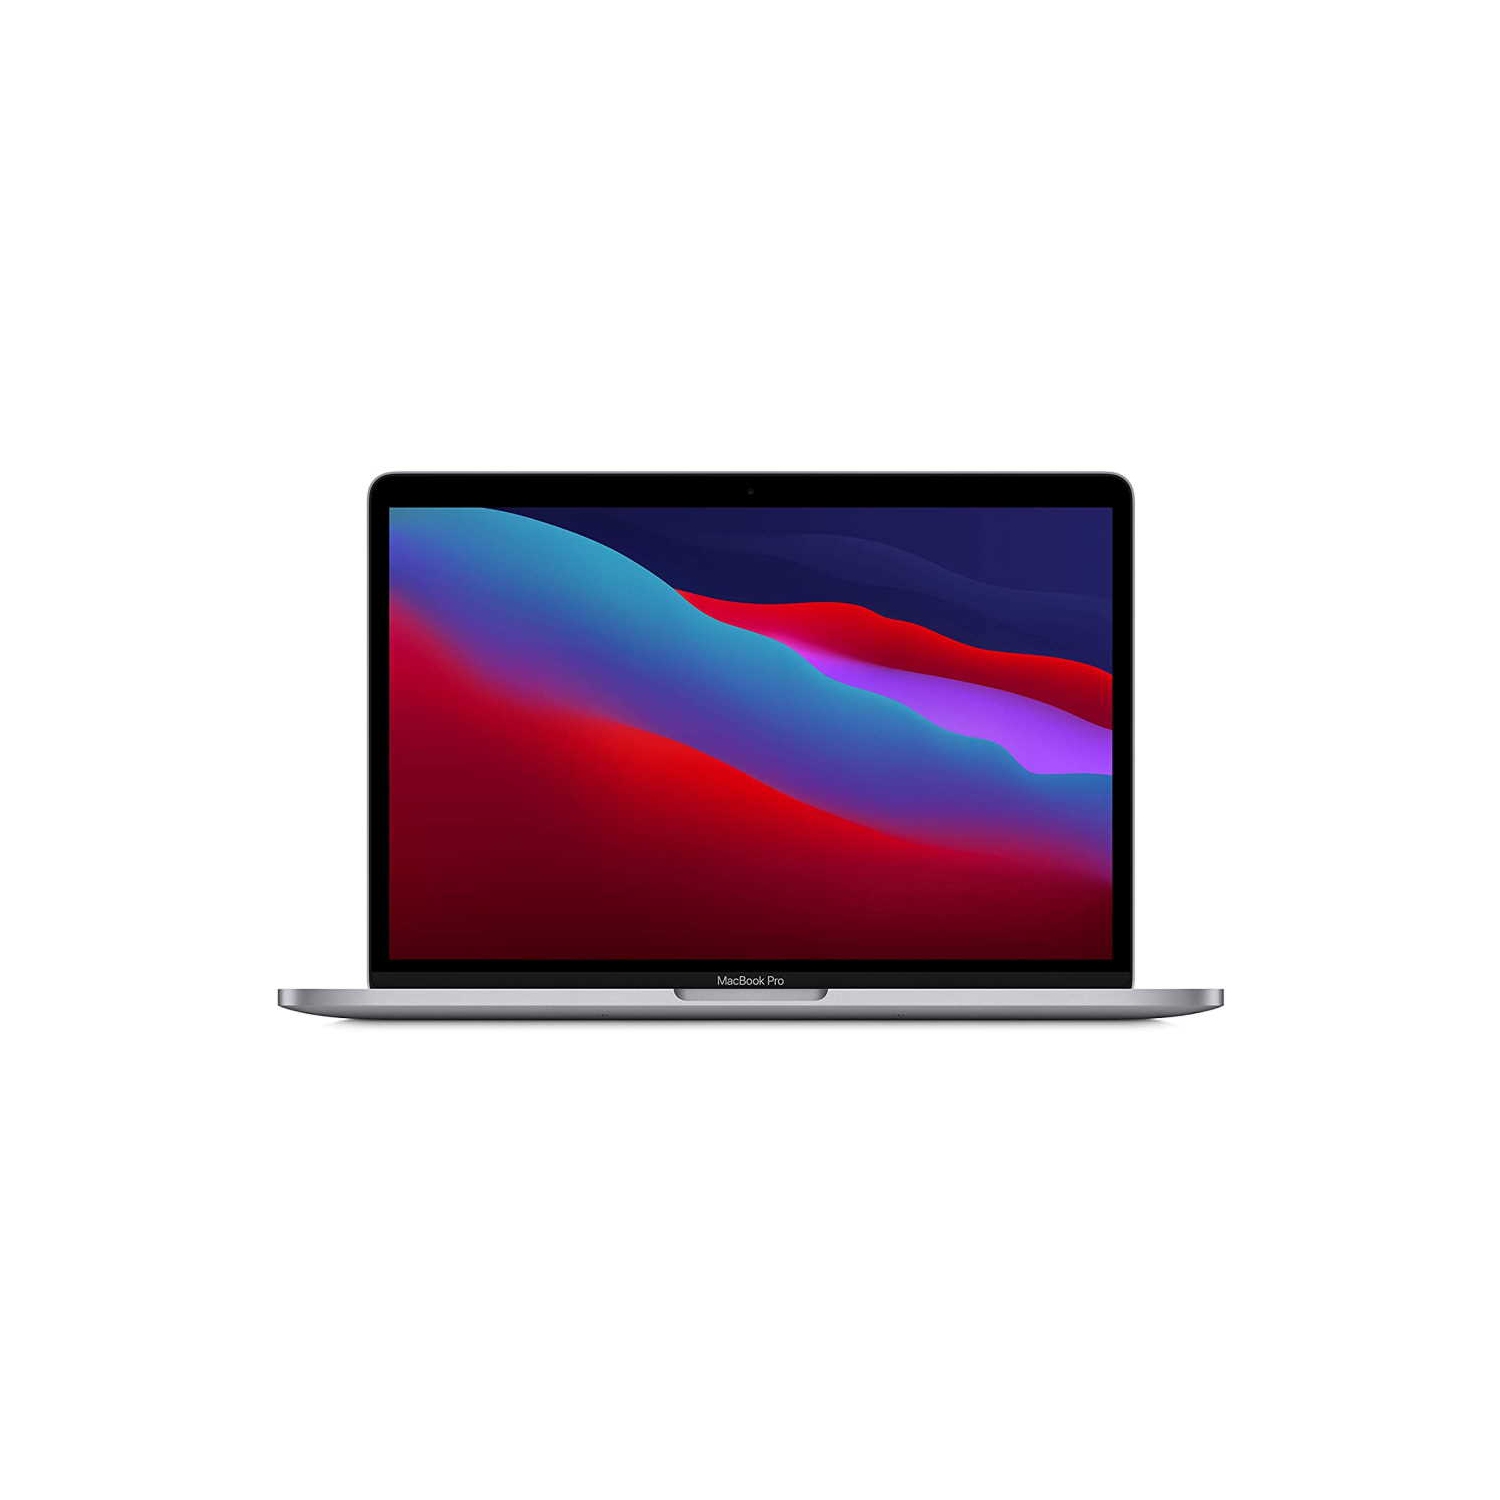 (Refurbished - Excellent) Macbook Pro 13.3-inch (8GPU, Space Gray, 1yr  Warranty) 3.2Ghz 8-Core M1 (2020) MYD82LL/A 256GB Flash 8GB RAM 2560x1600  Mac 